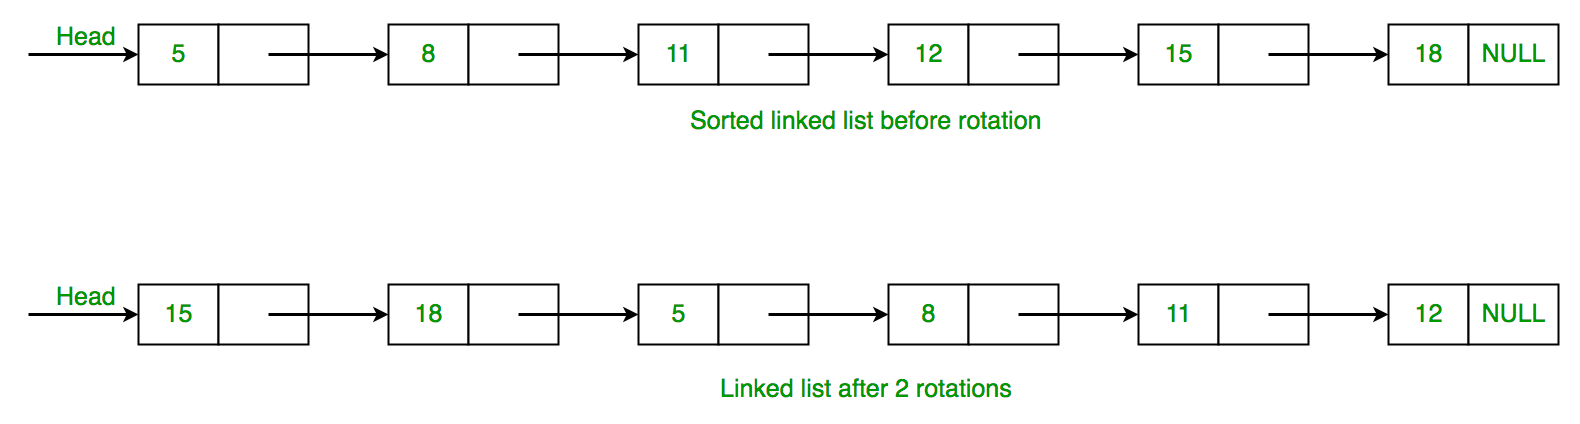 C++程序 计算已排序旋转链表中的旋转数